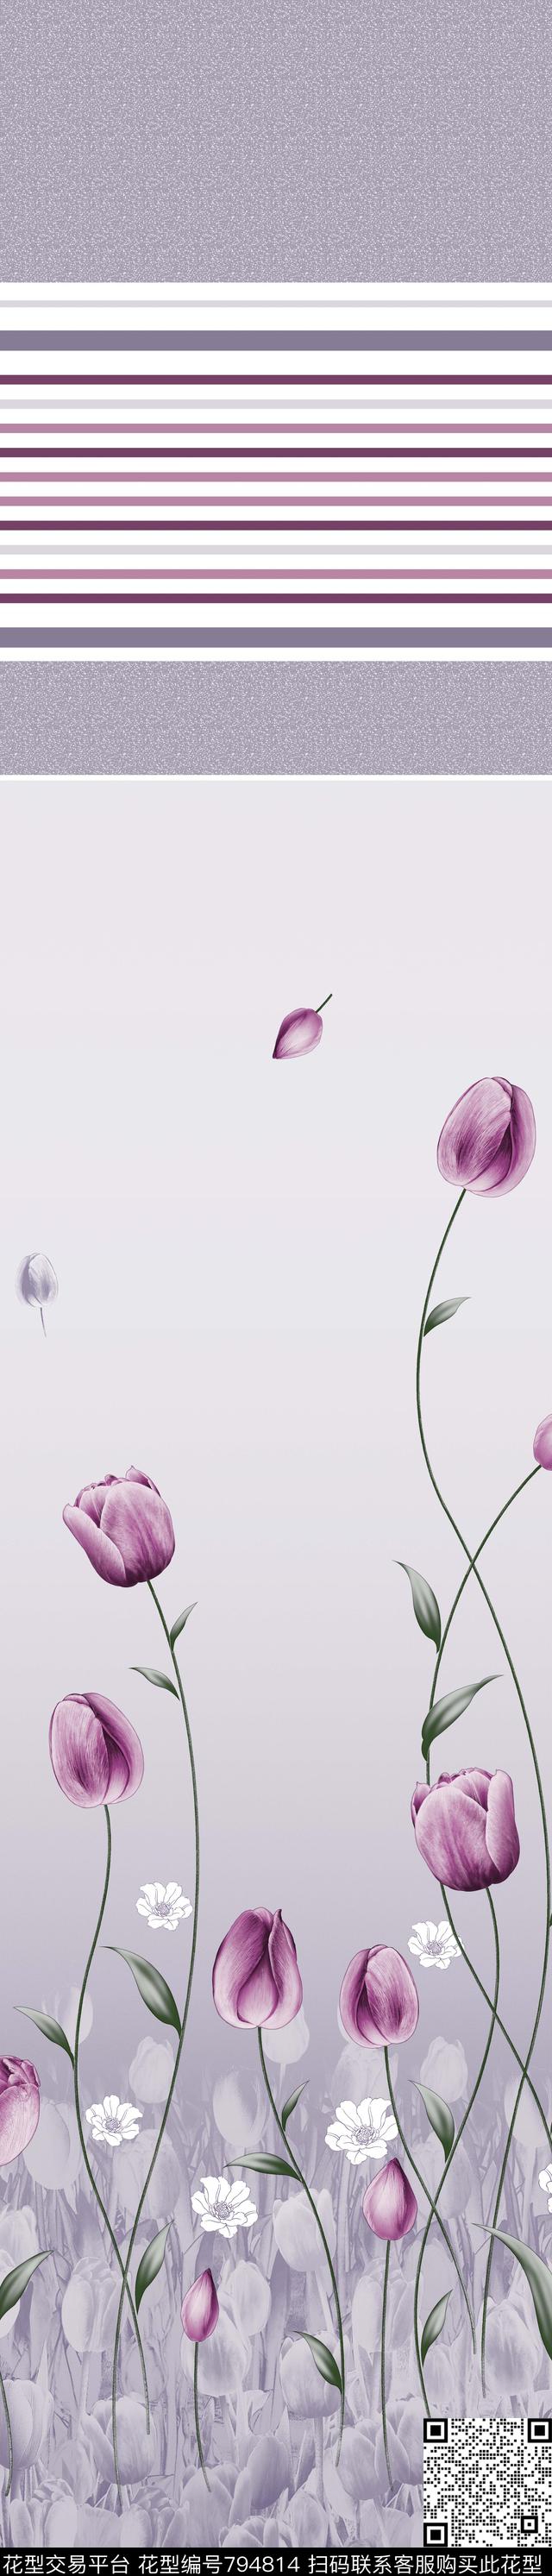 YJH0302p.jpg - 794814 - 郁金香 花朵 窗帘 - 传统印花花型 － 窗帘花型设计 － 瓦栏